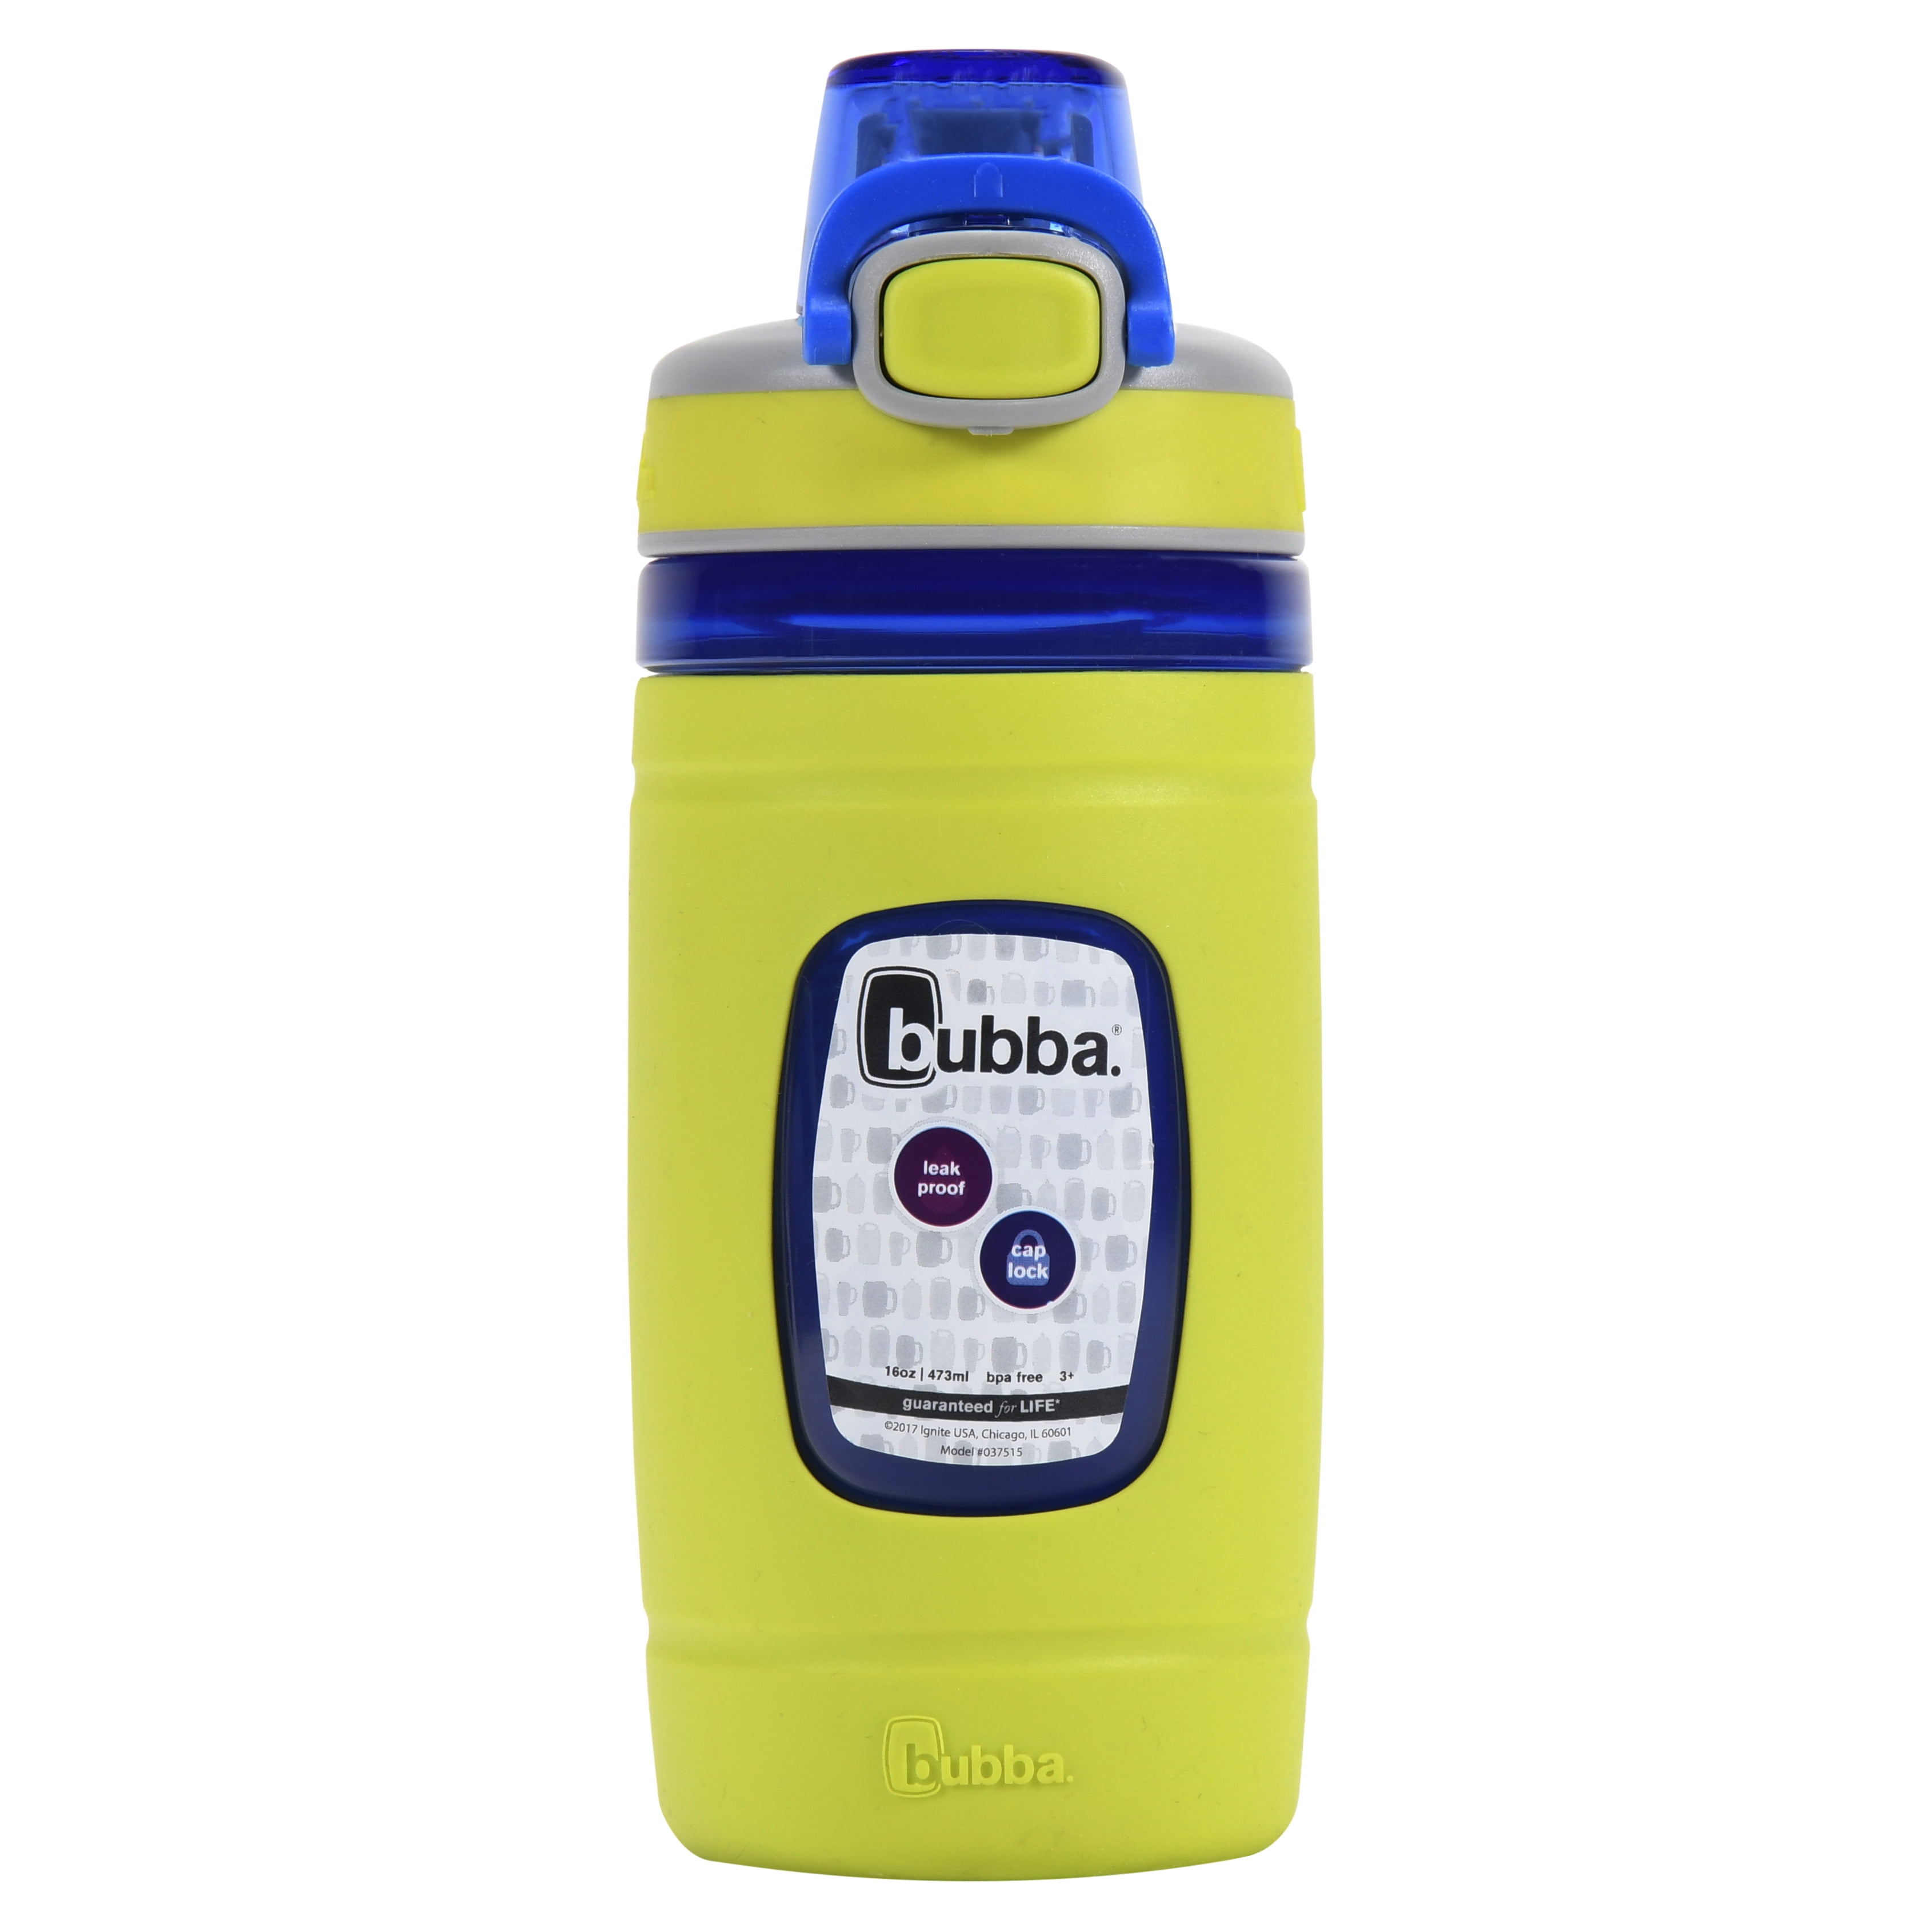  Bubba Brands Flo Kids Water Bottle with Leak-Proof Lid